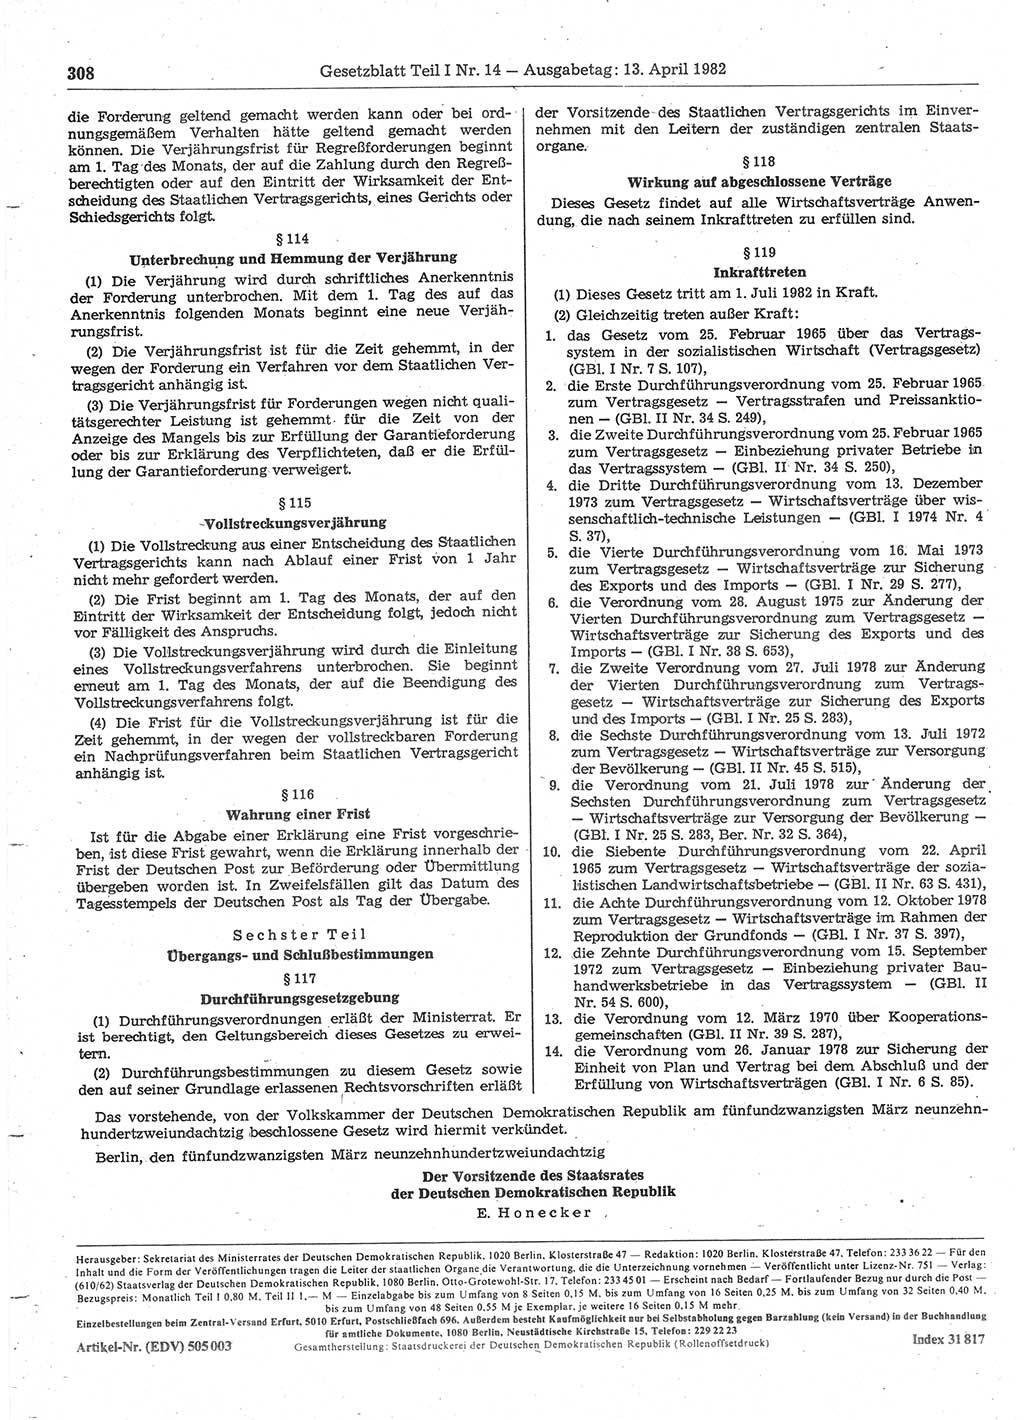 Gesetzblatt (GBl.) der Deutschen Demokratischen Republik (DDR) Teil Ⅰ 1982, Seite 308 (GBl. DDR Ⅰ 1982, S. 308)